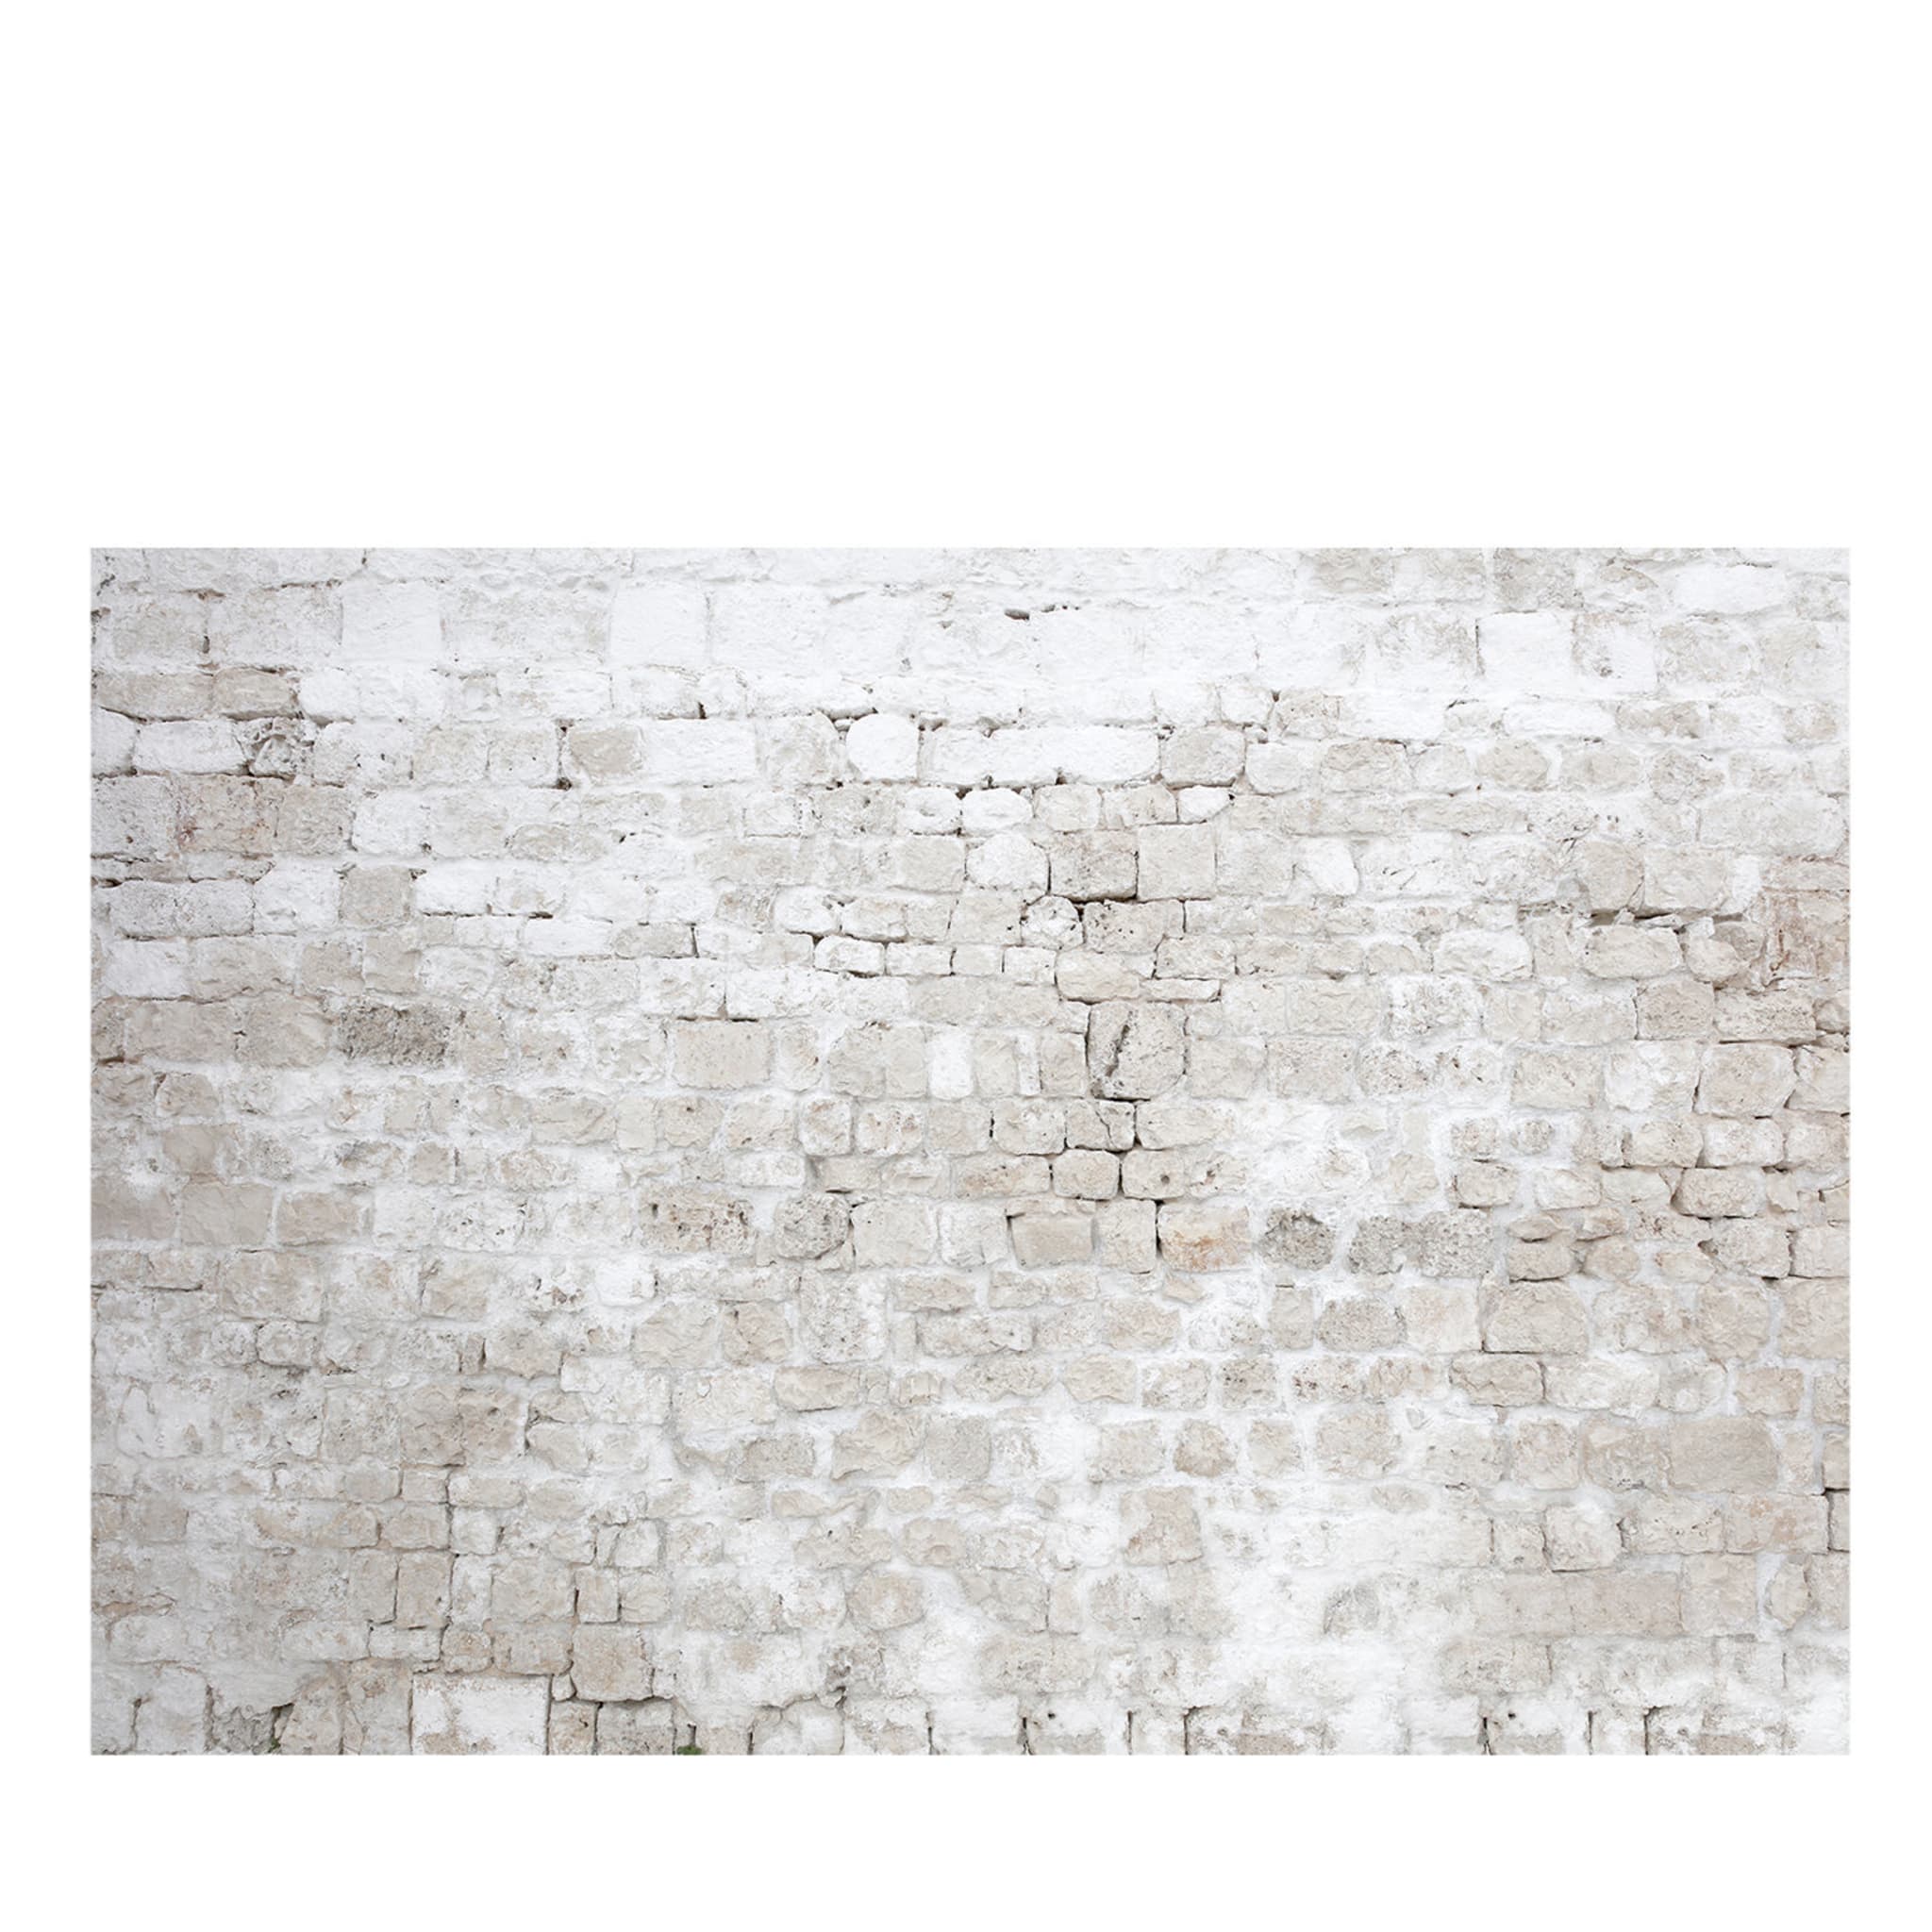 Brick Wall Textured Wallpaper #1 - Main view